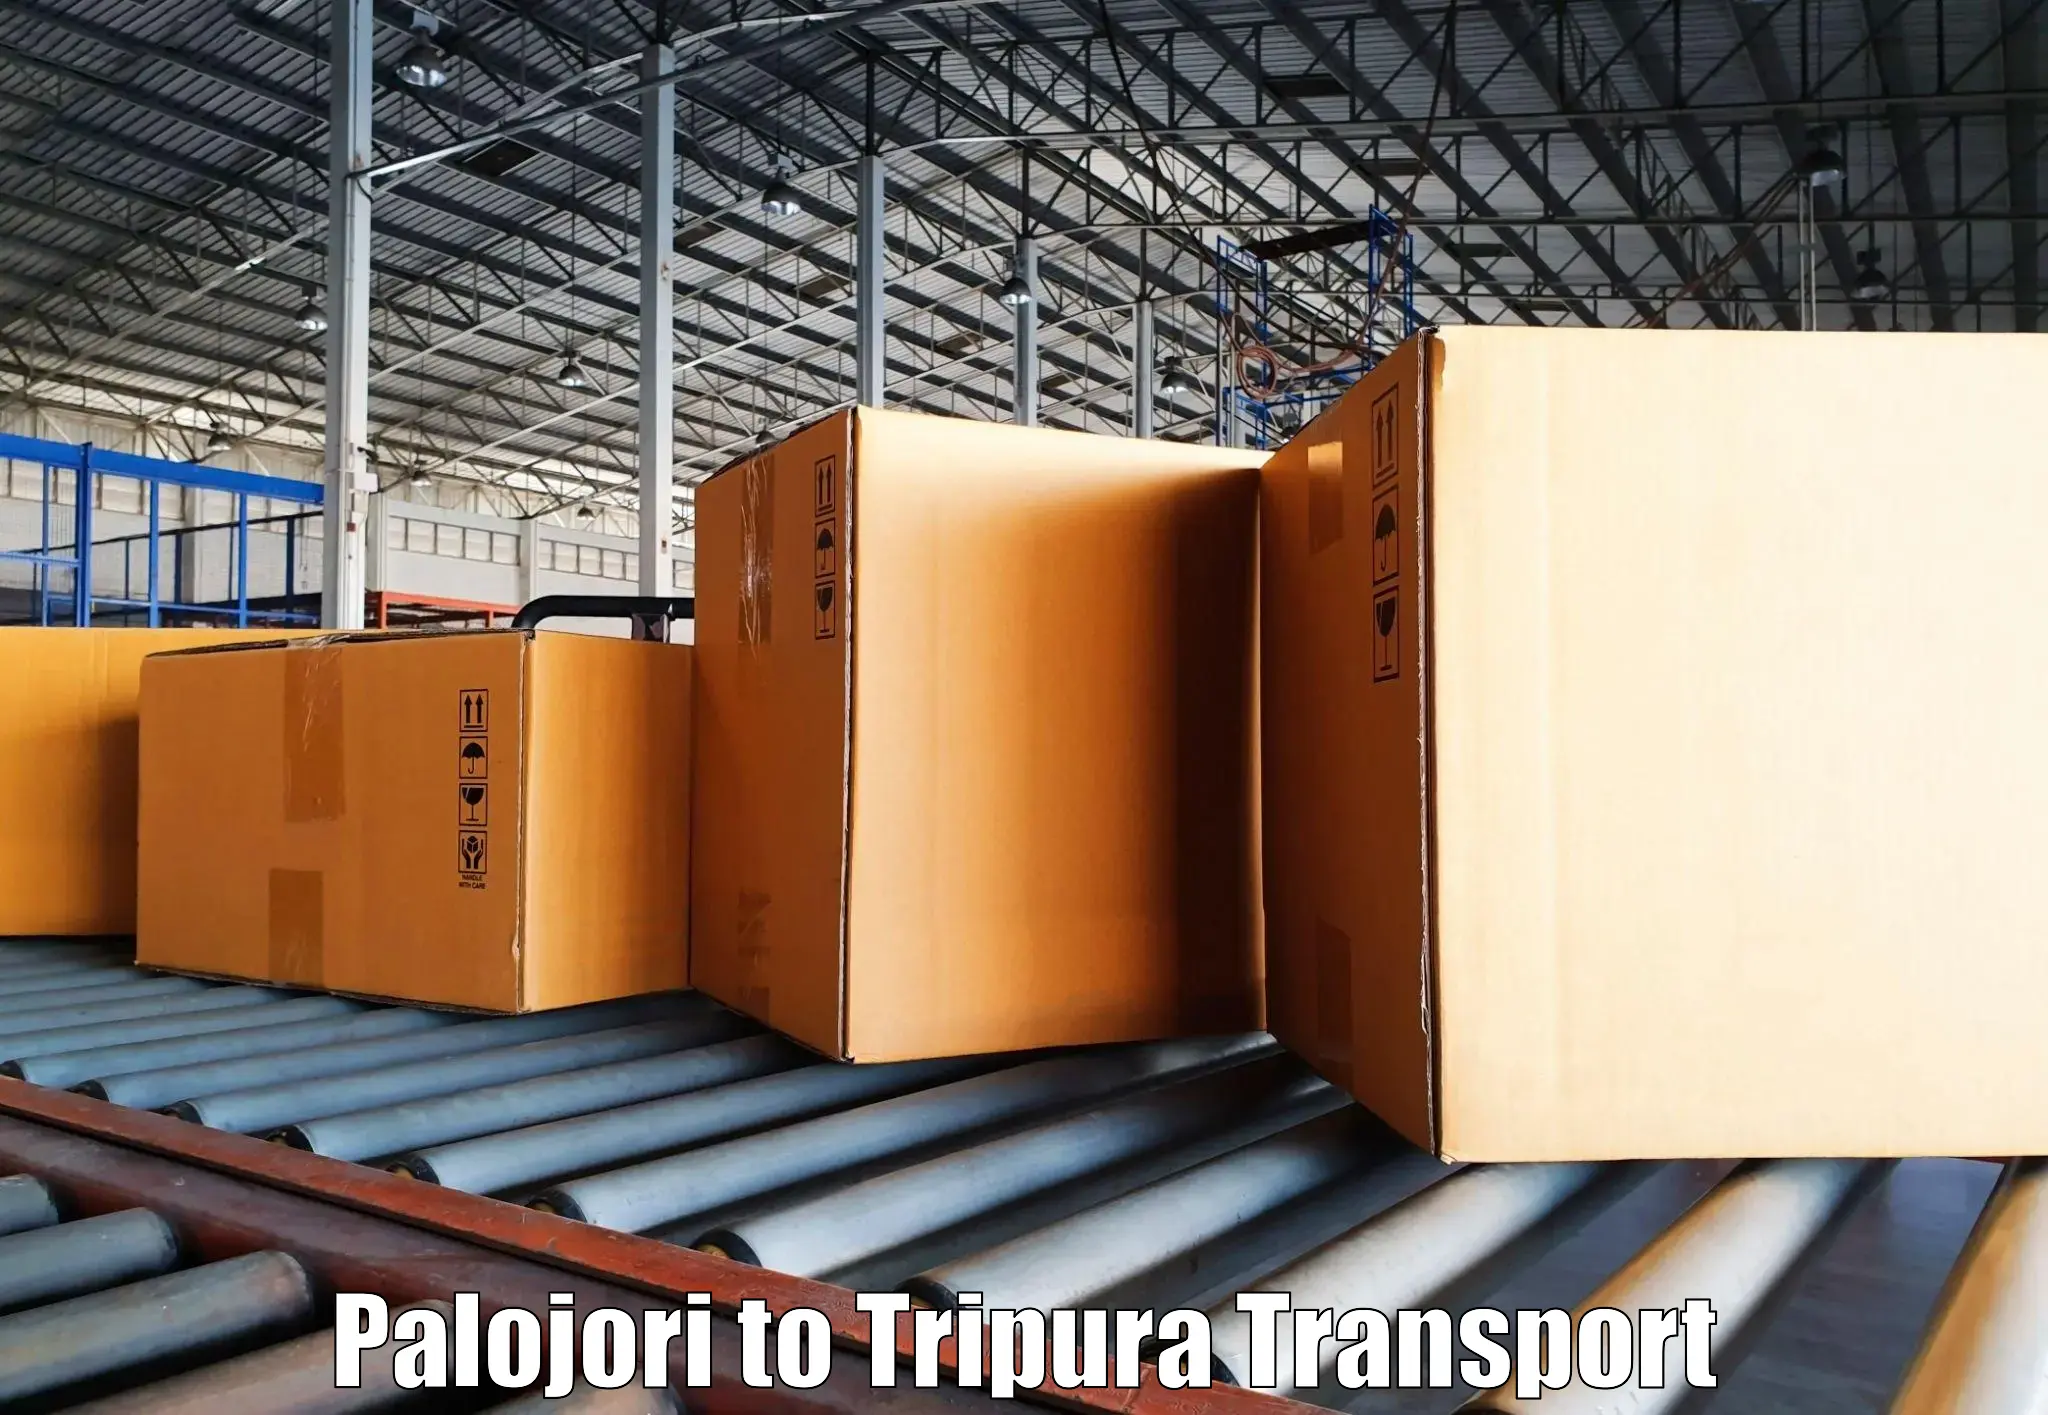 Delivery service in Palojori to Agartala